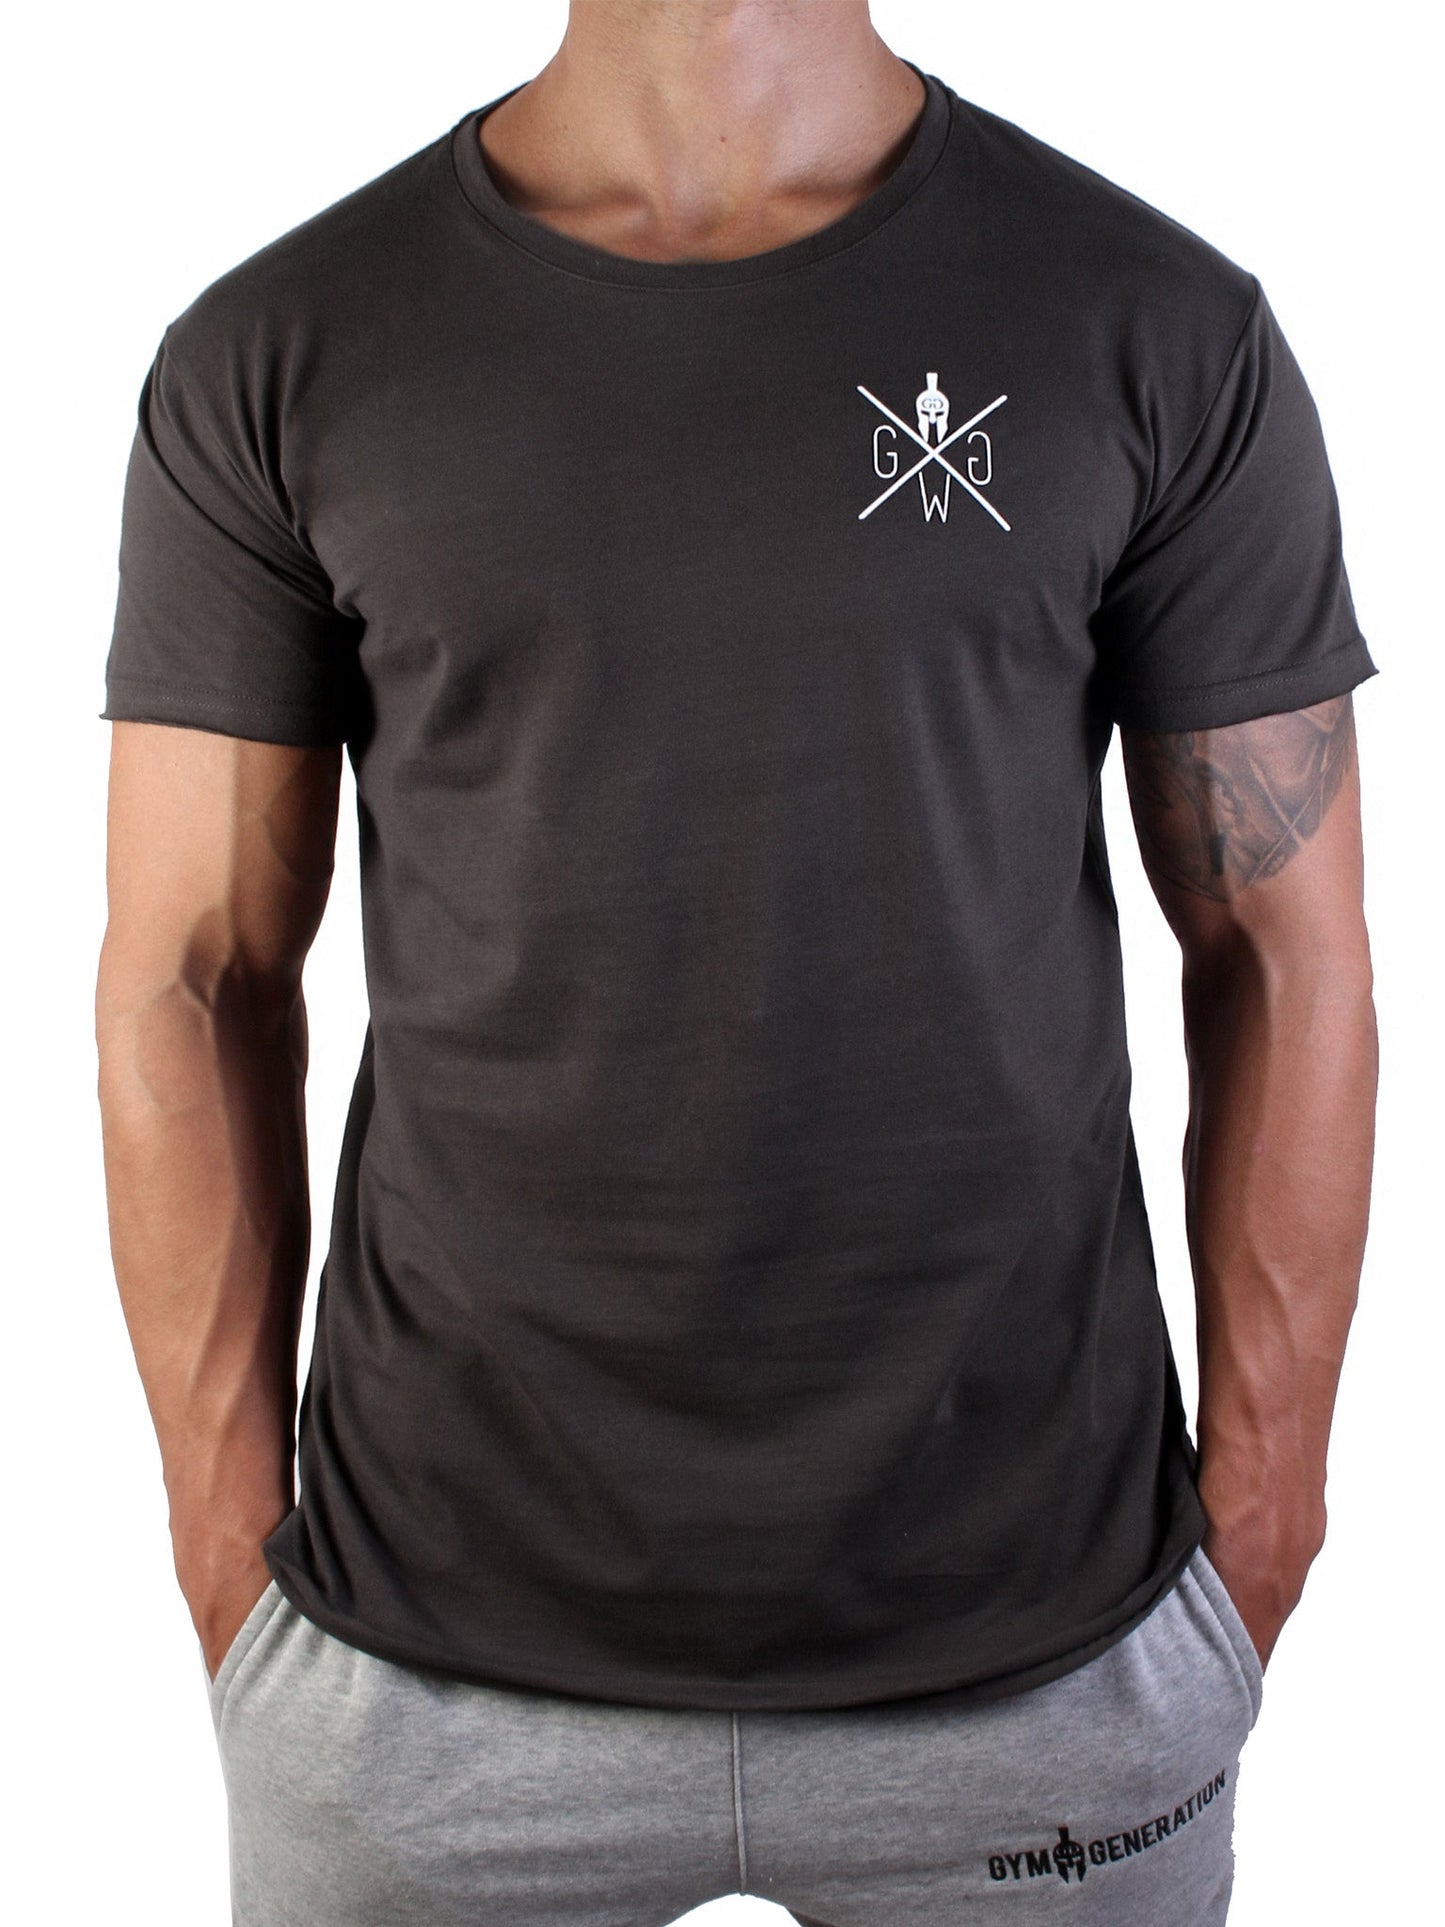 Gym Generation Warrior T-Shirt in Dunkelgrau, hergestellt aus atmungsaktivem Material für maximalen Komfort.